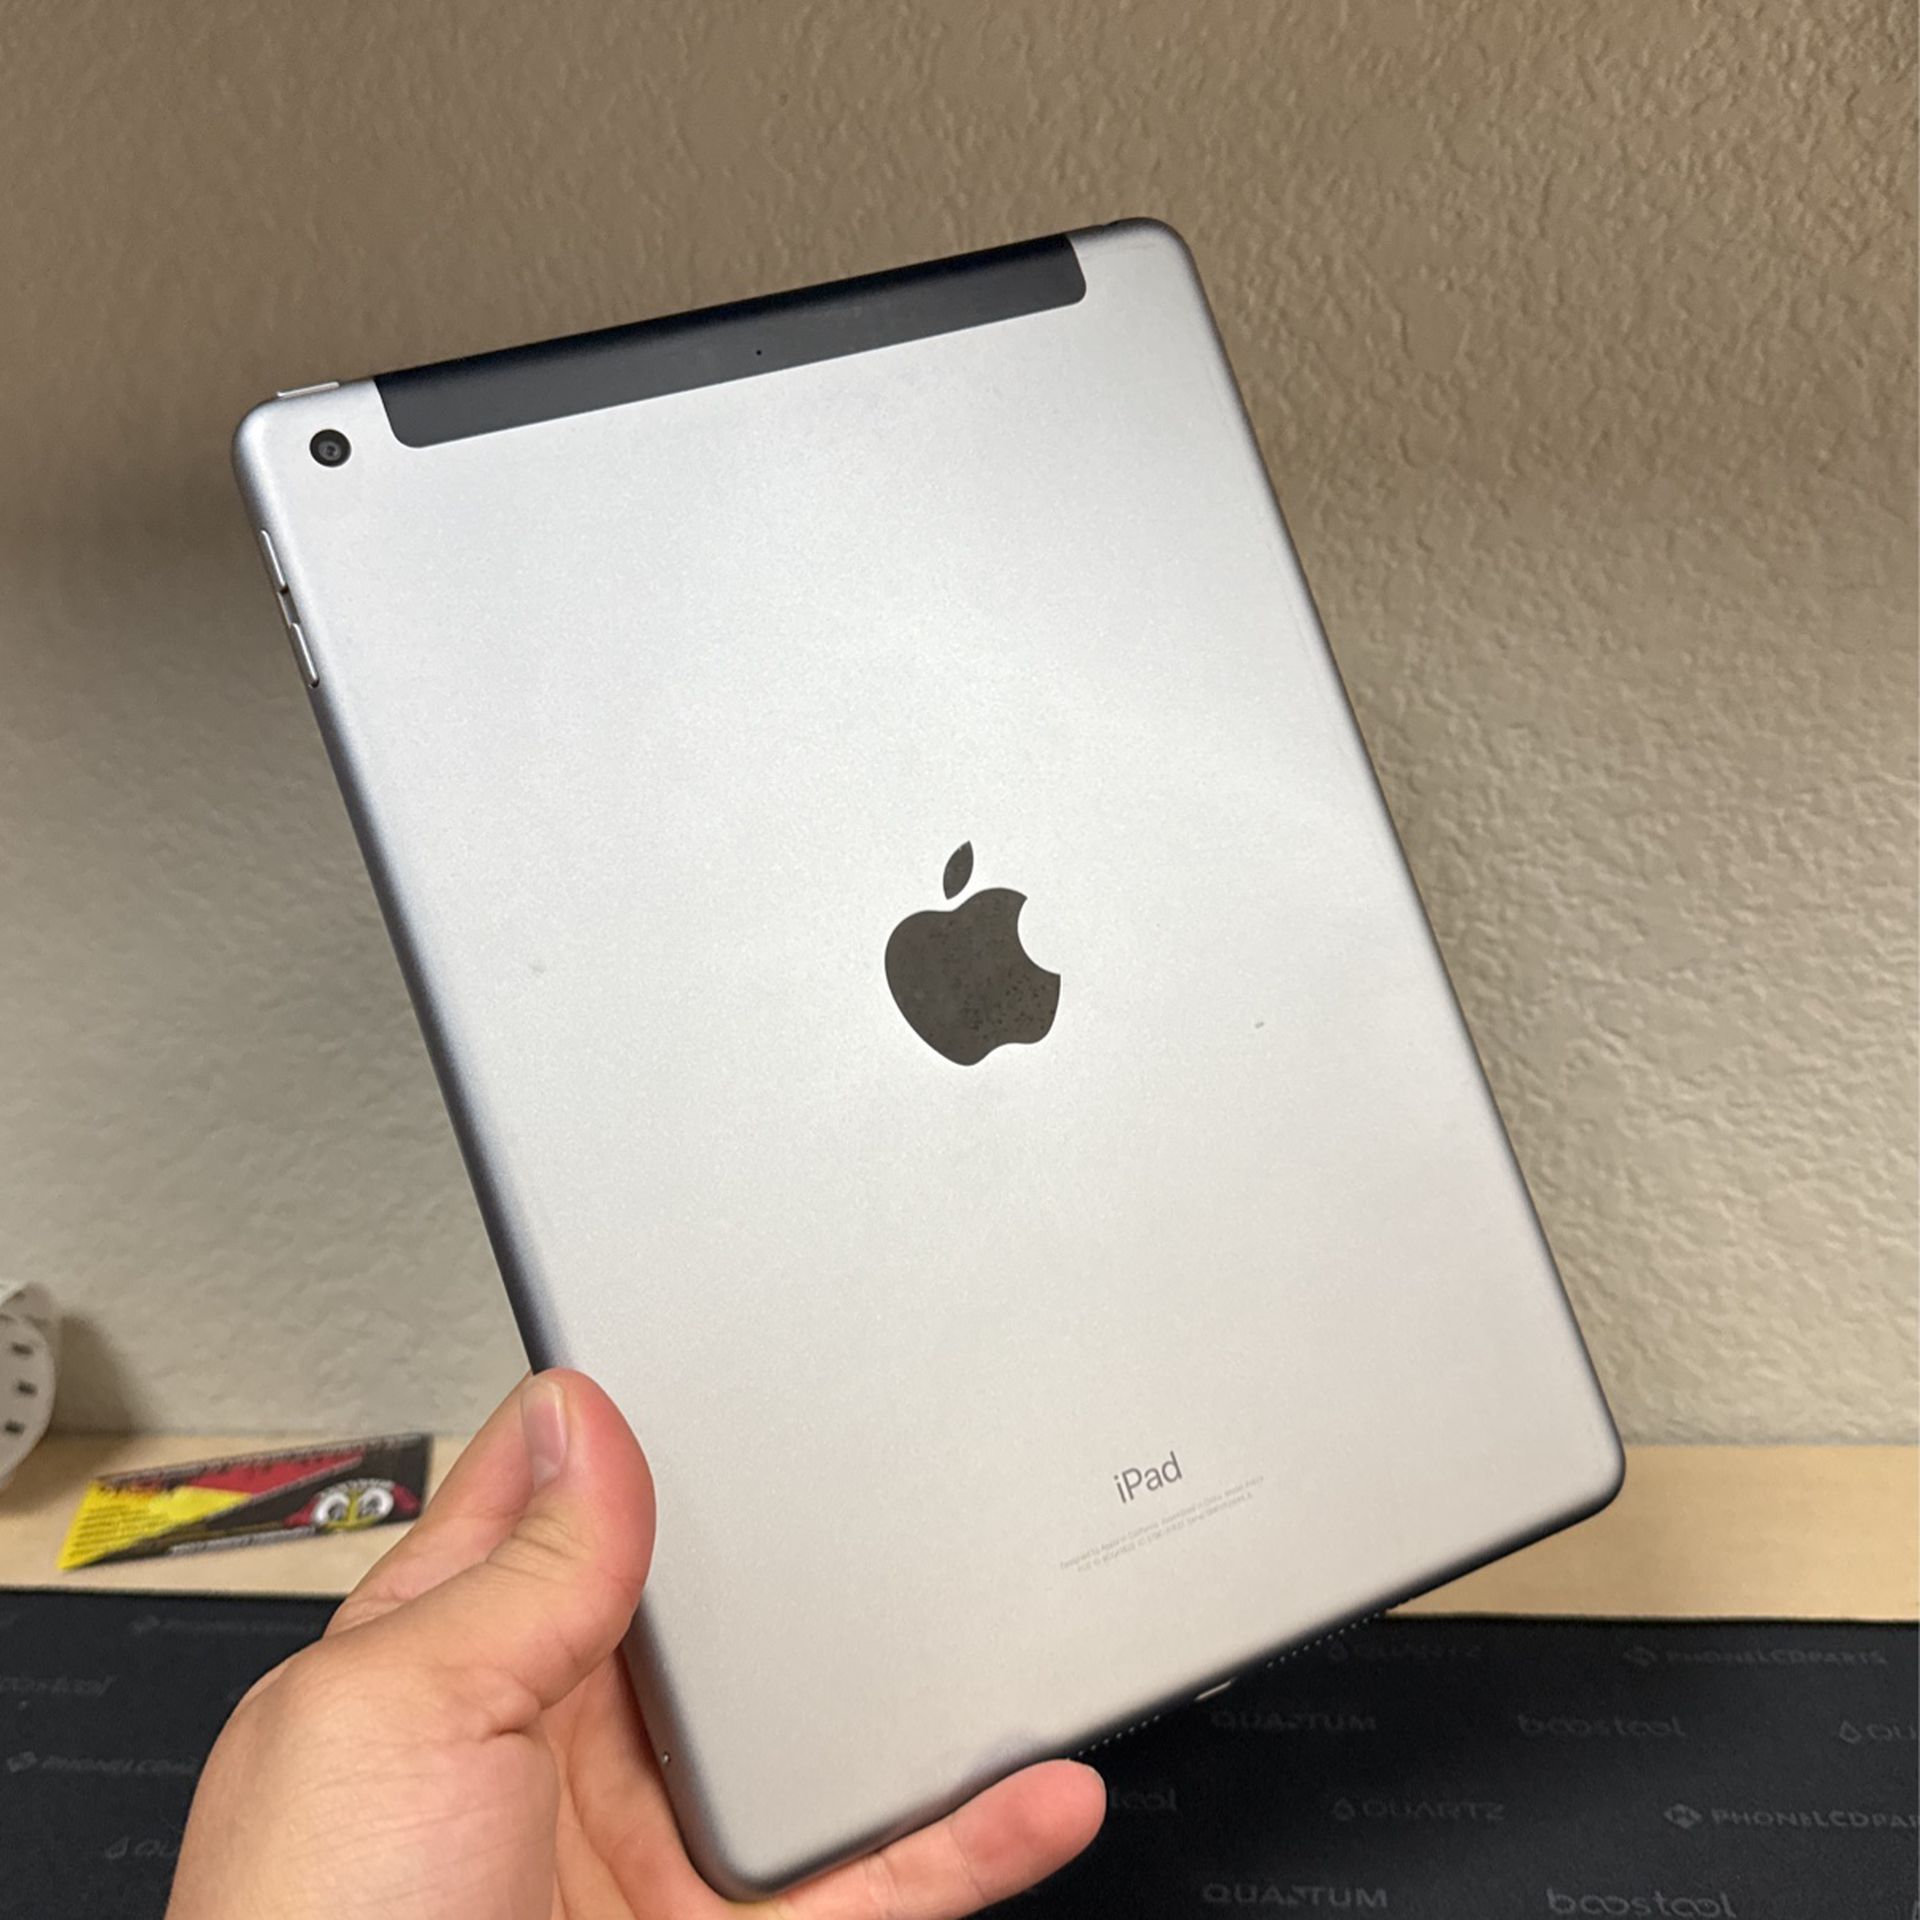 iPad 5th Gen 